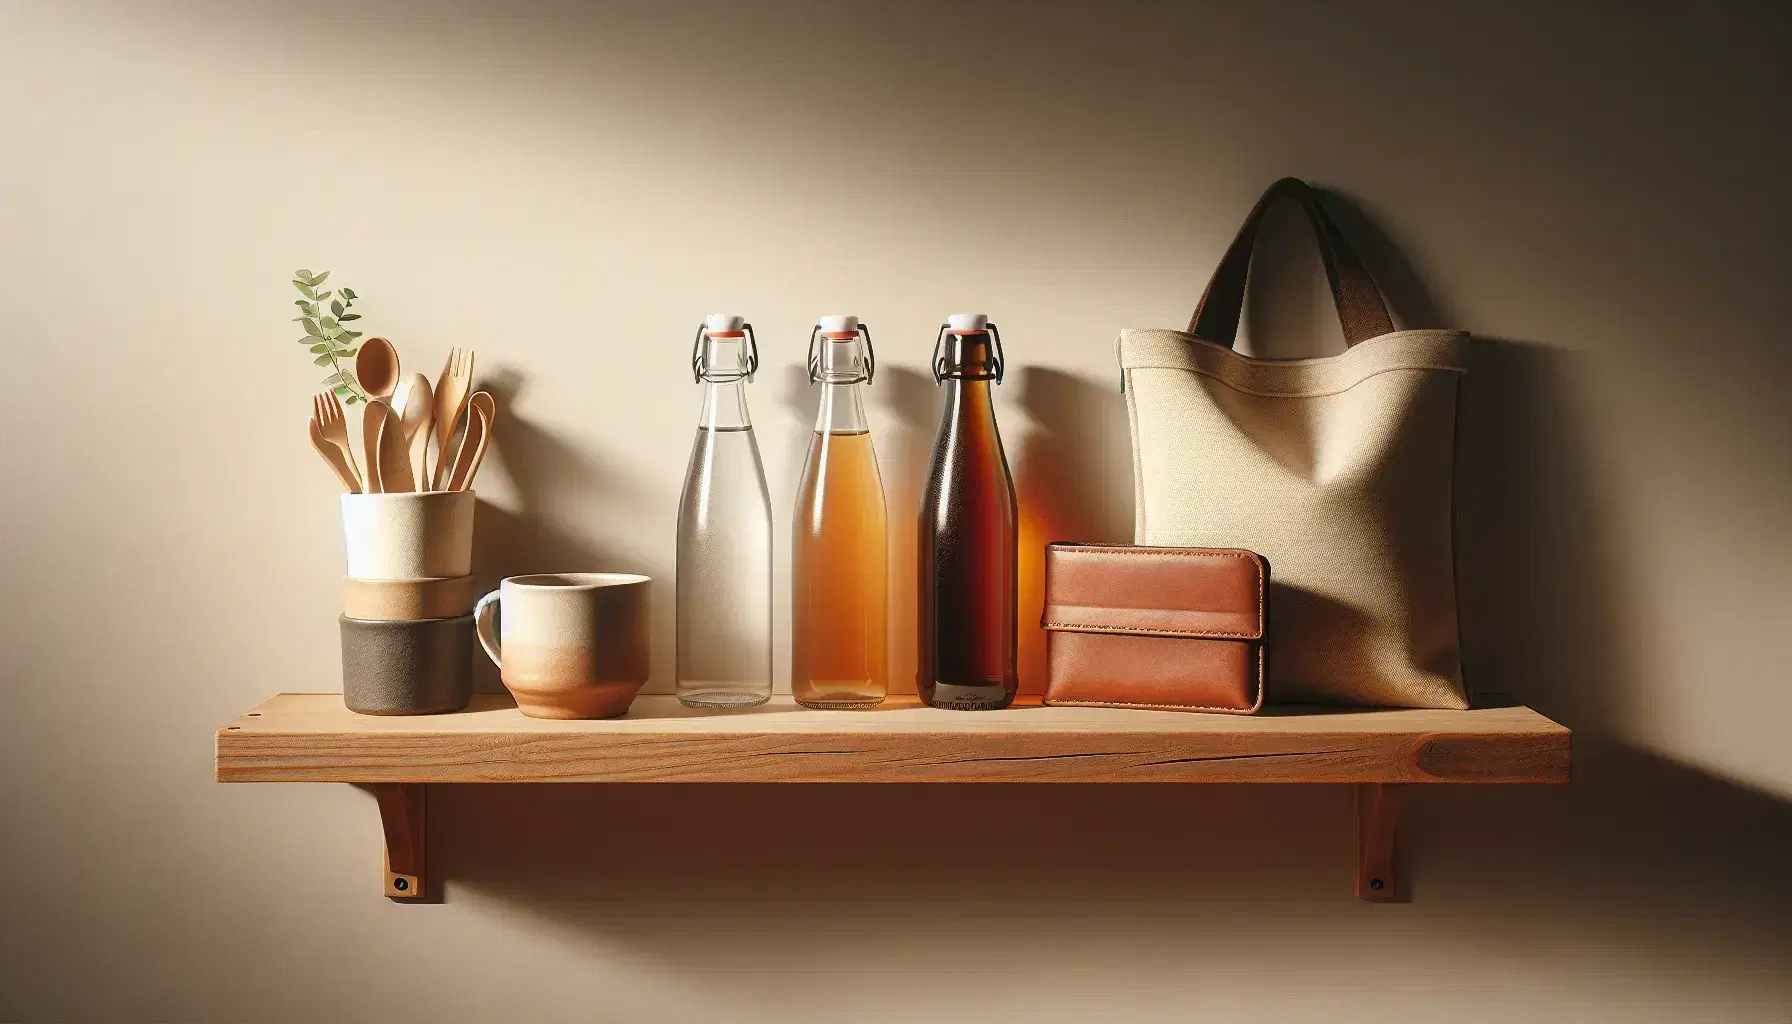 Estante de madera con tazas de café cerámicas, botellas de agua y refresco, bolsa de tela y cartera de cuero, representando bienes complementarios y sustitutos.